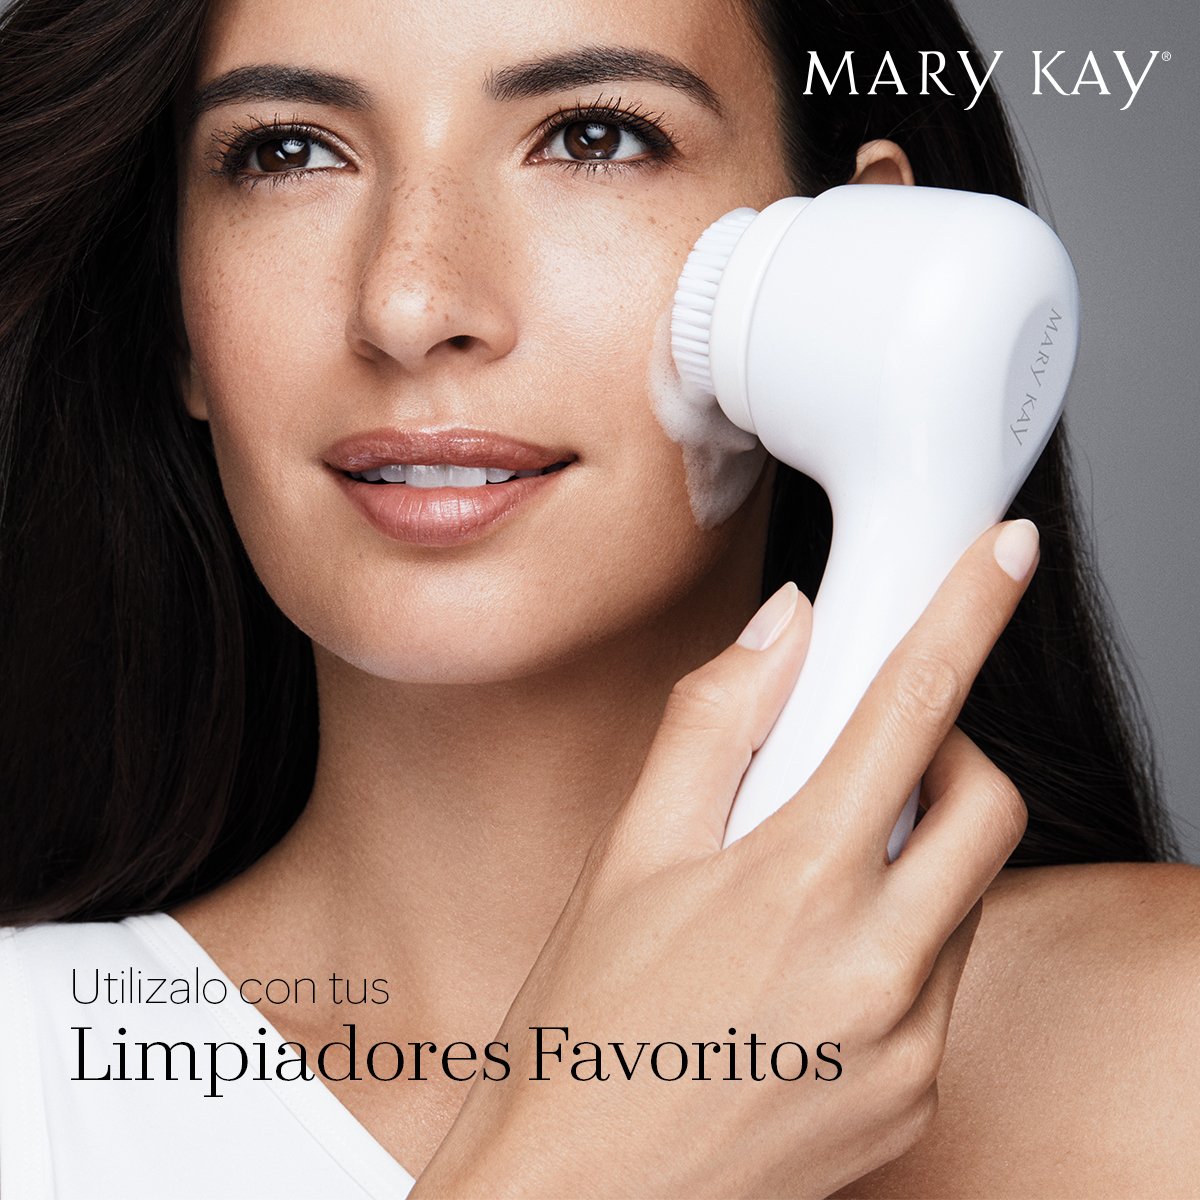 Mary Kay Argentina on Twitter: "Con el Cepillo Limpiador Facial  Skinvigorate Sonic™ en tan solo 60 segundos podés lograr una limpieza  sónica superior. Conocé los Limpiadores que te recomendamos para eliminar  completamente